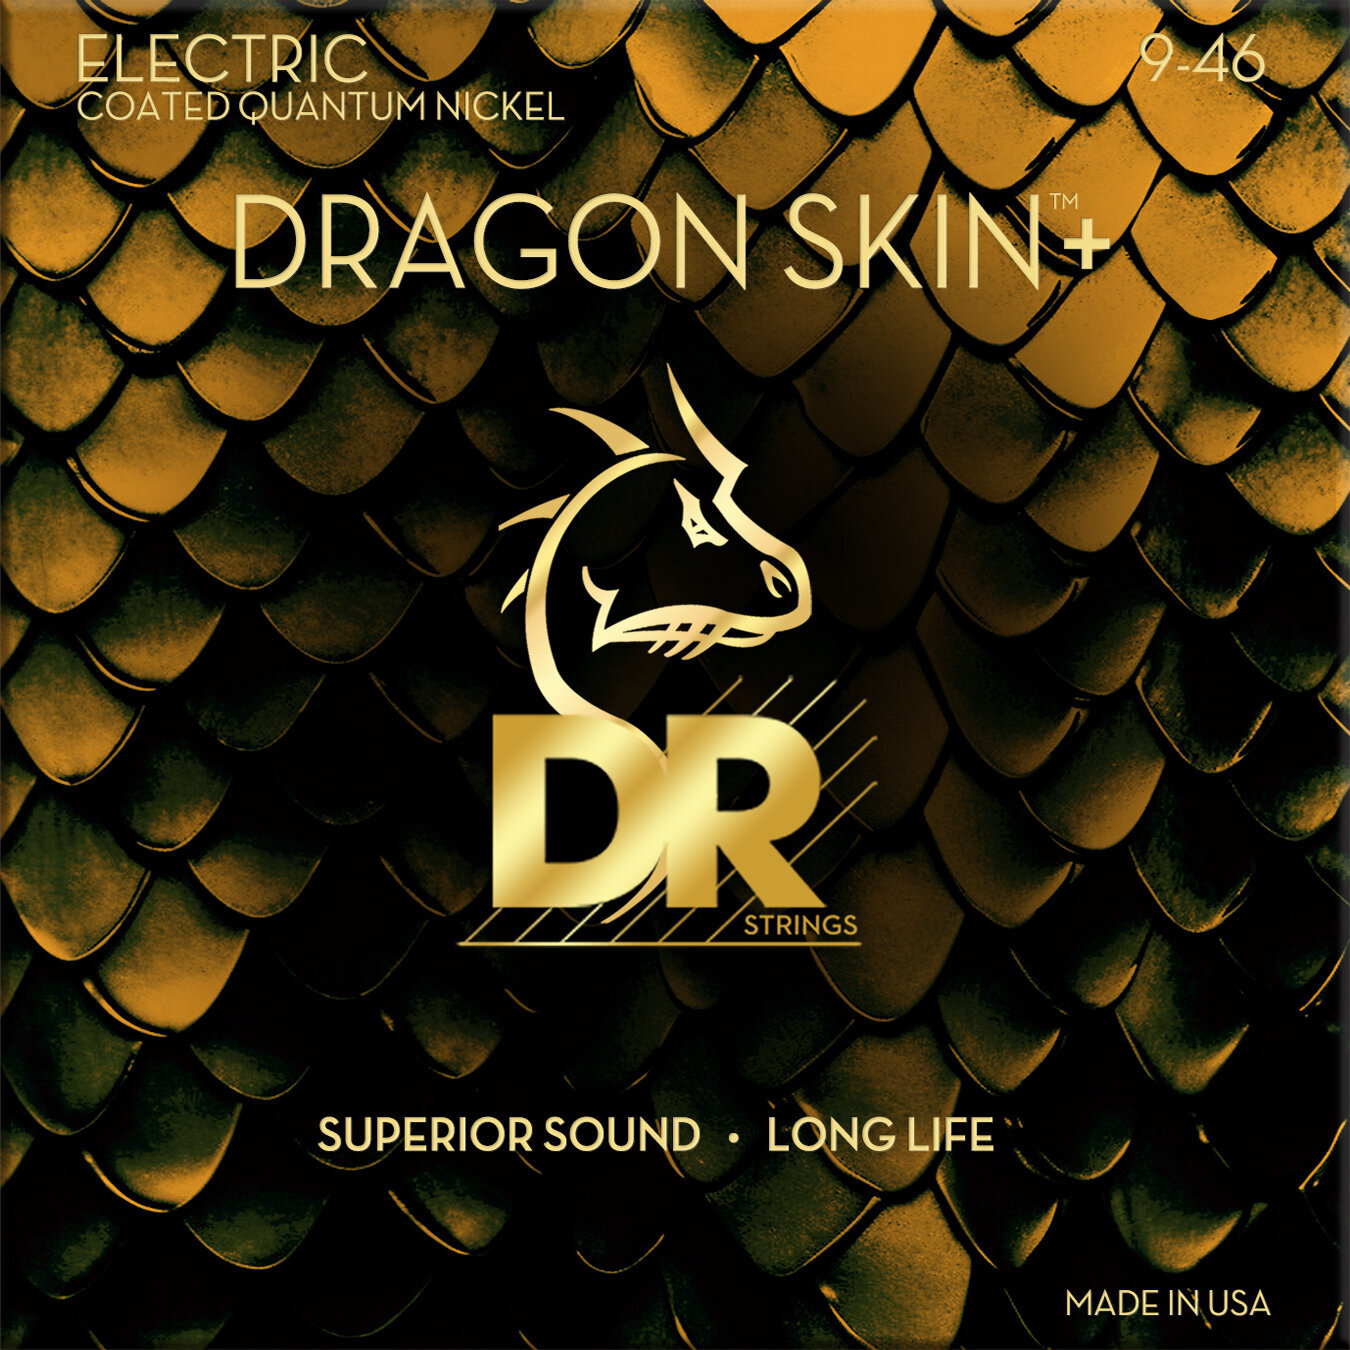 E-gitarrsträngar DR Strings Dragon Skin+ Coated Light to Medium 9-46